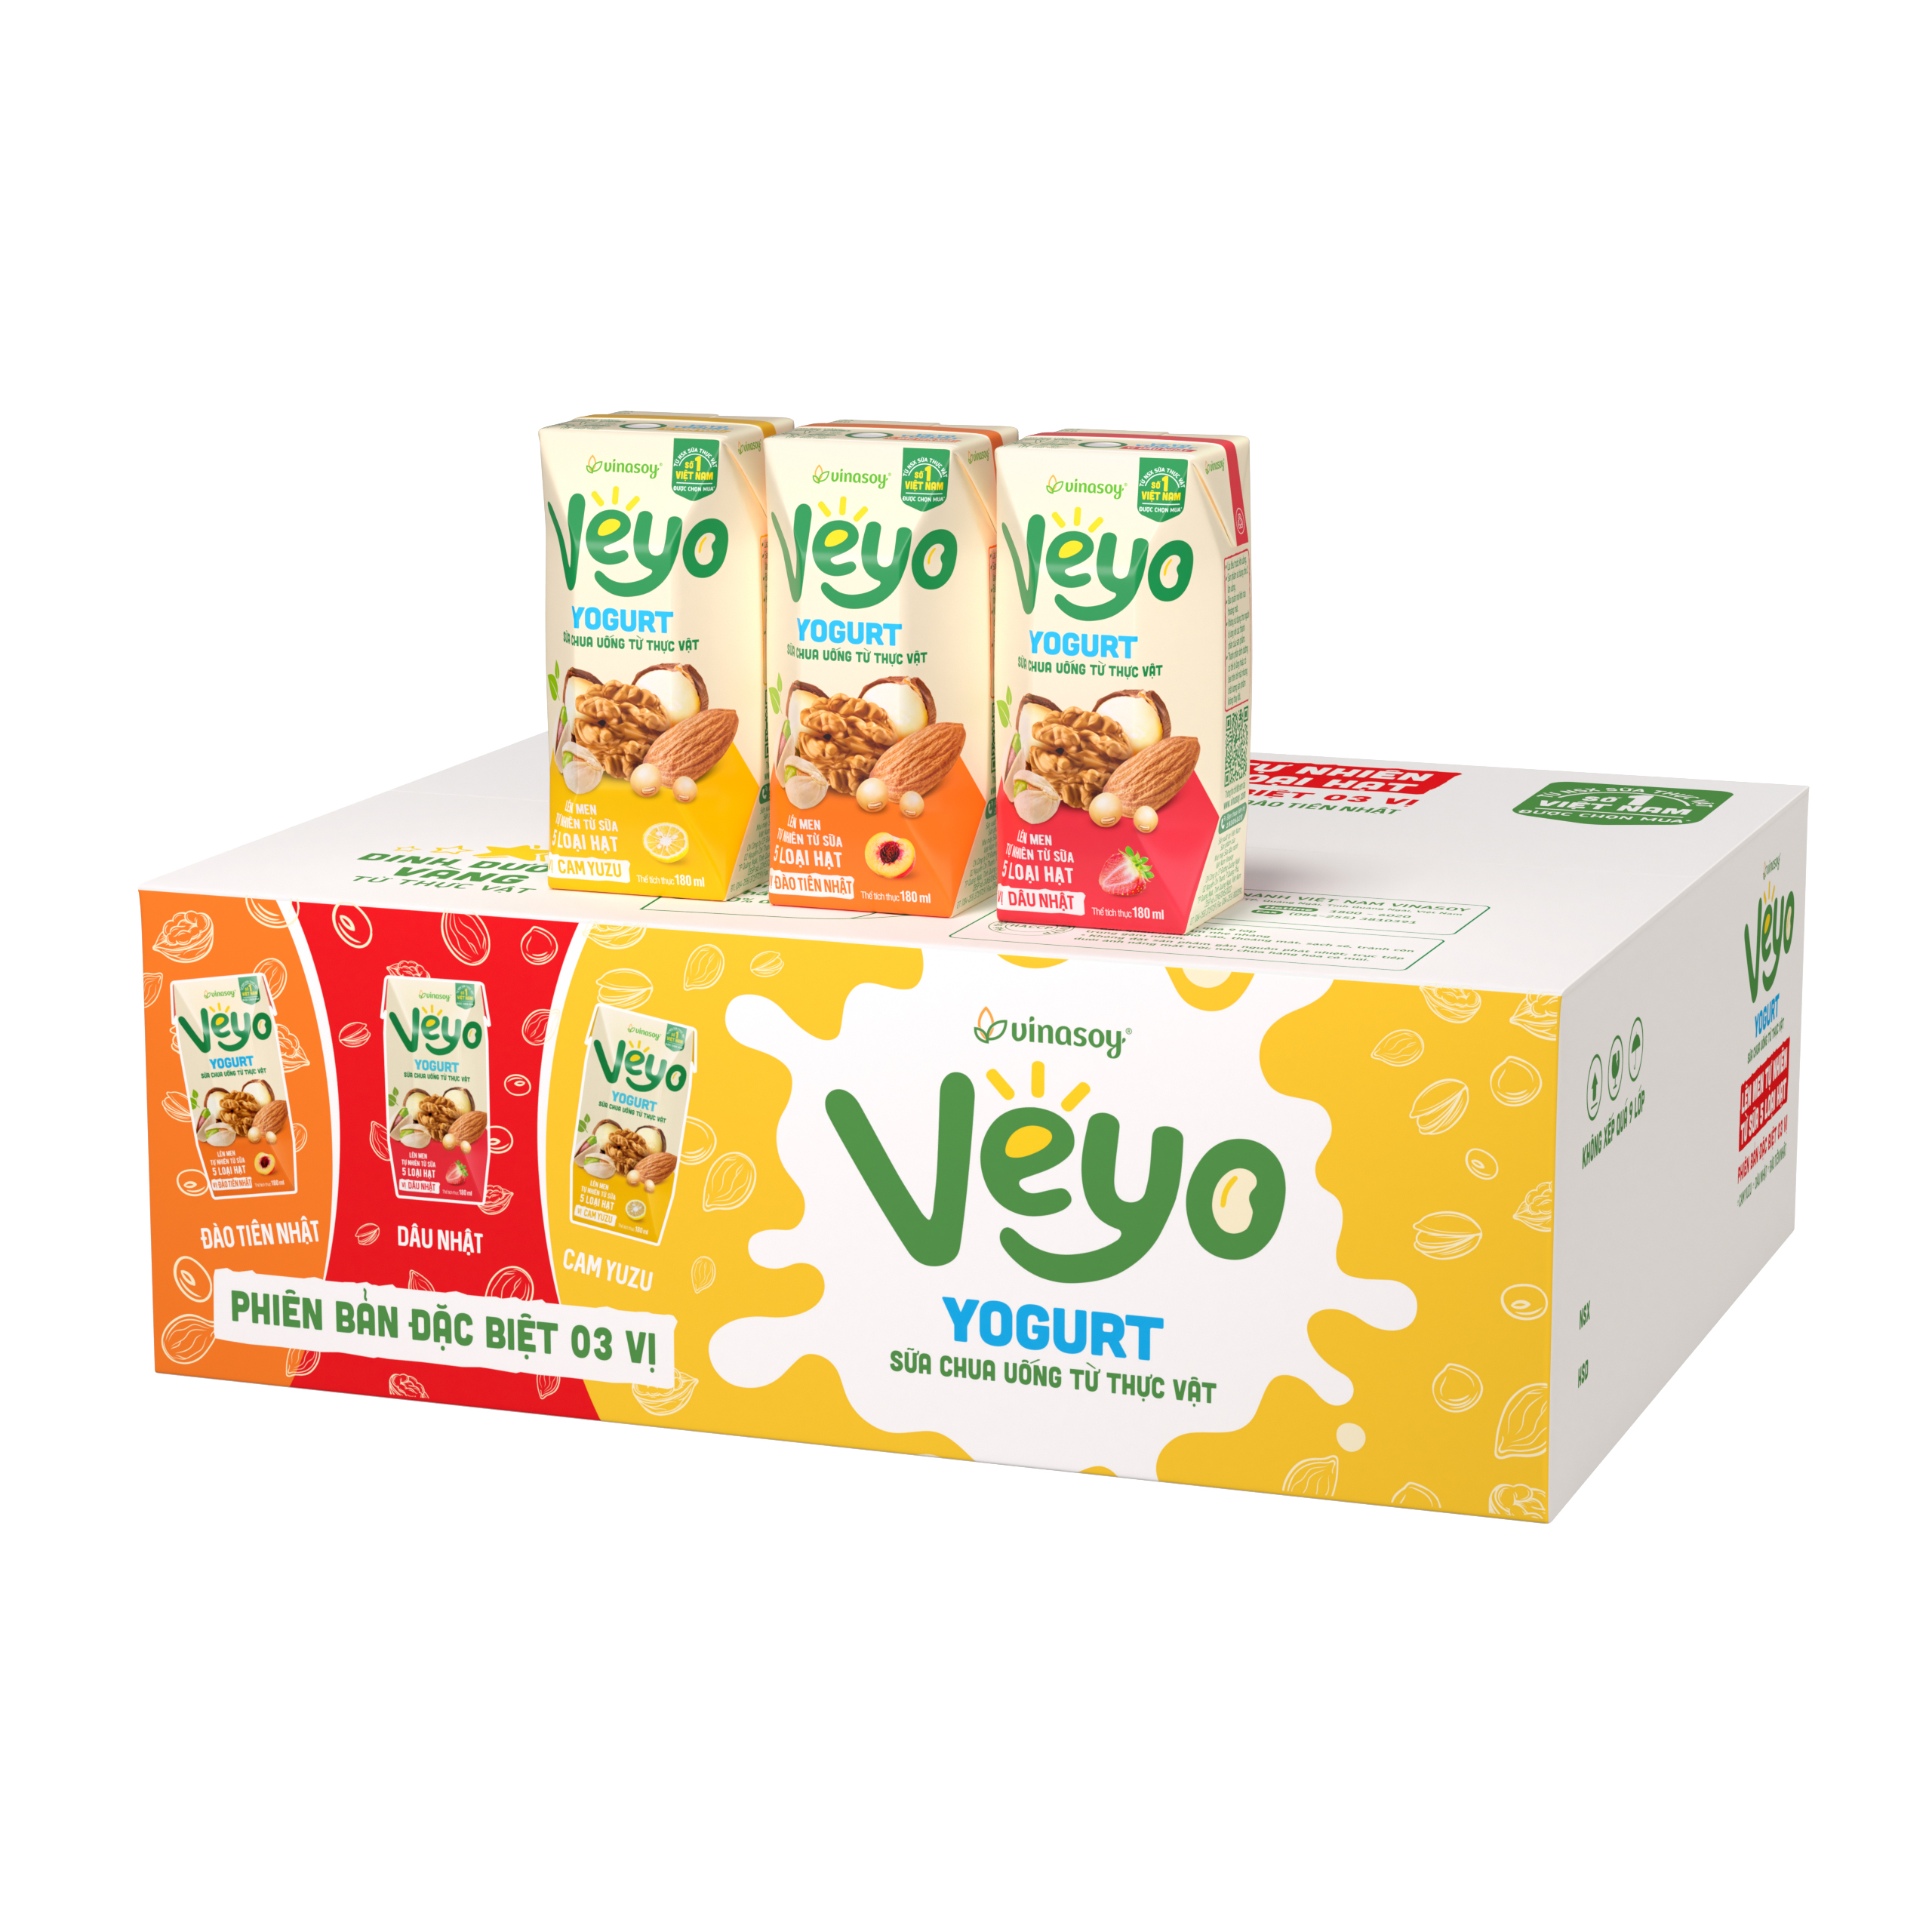 Thùng Sữa chua uống từ thực vật Veyo Yogurt Phiên bản đặc biệt 03 vị 30